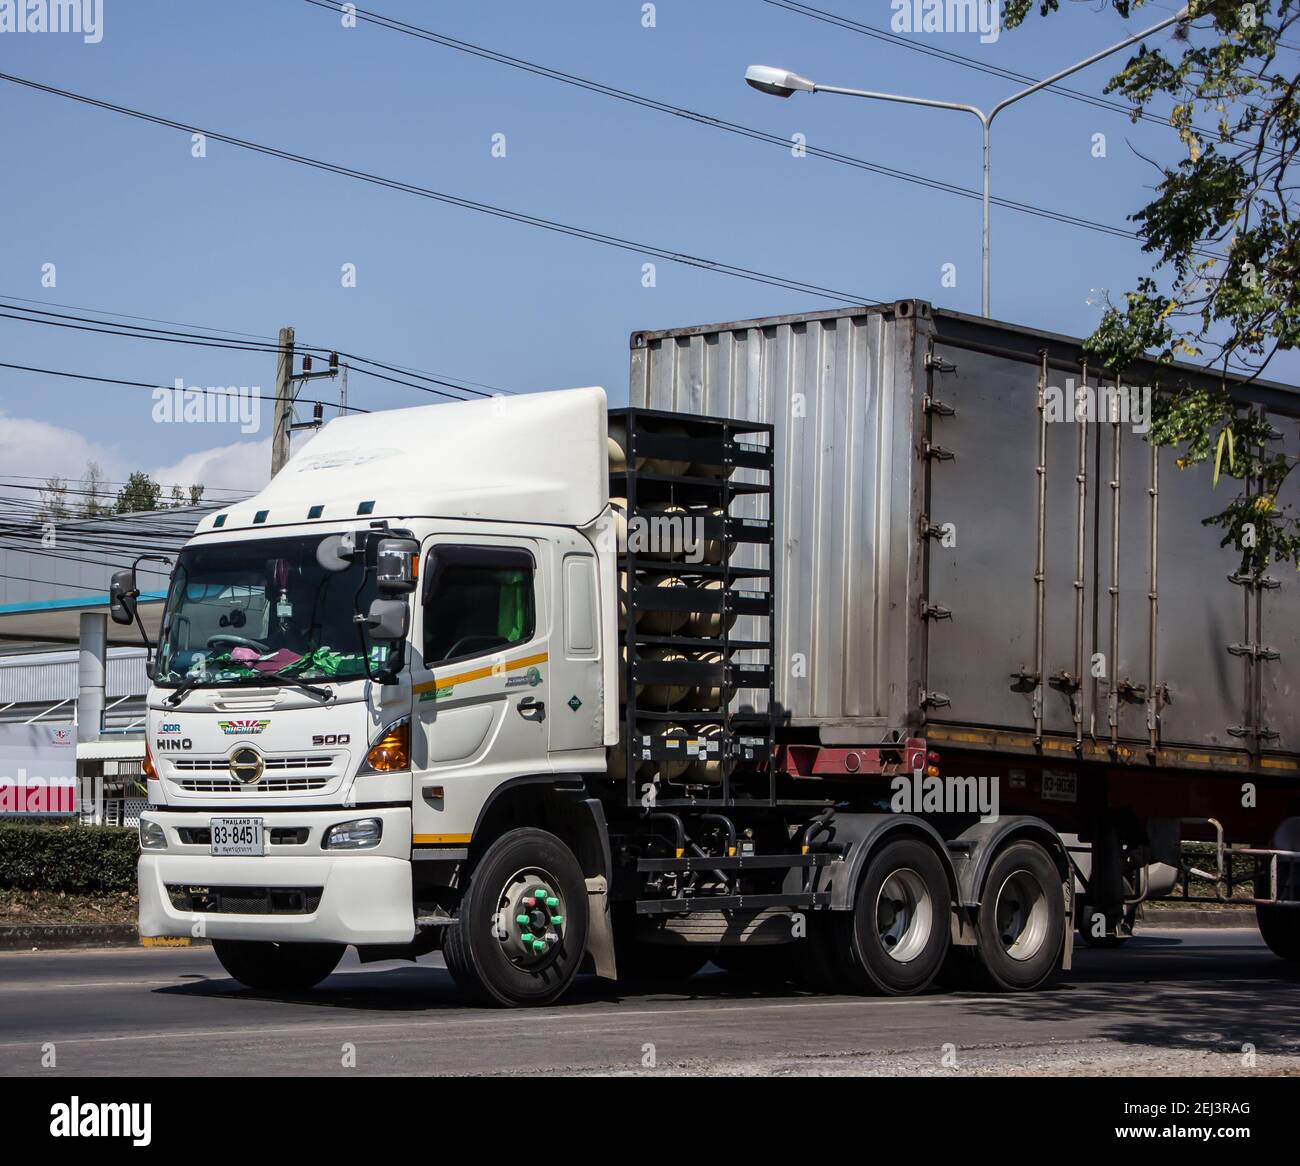 Chiangmai, Thaïlande - février 9 2021 : camion-remorque de la compagnie Santipab. Photo sur la route n°1001 à environ 8 km du centre ville, thaïlande Banque D'Images